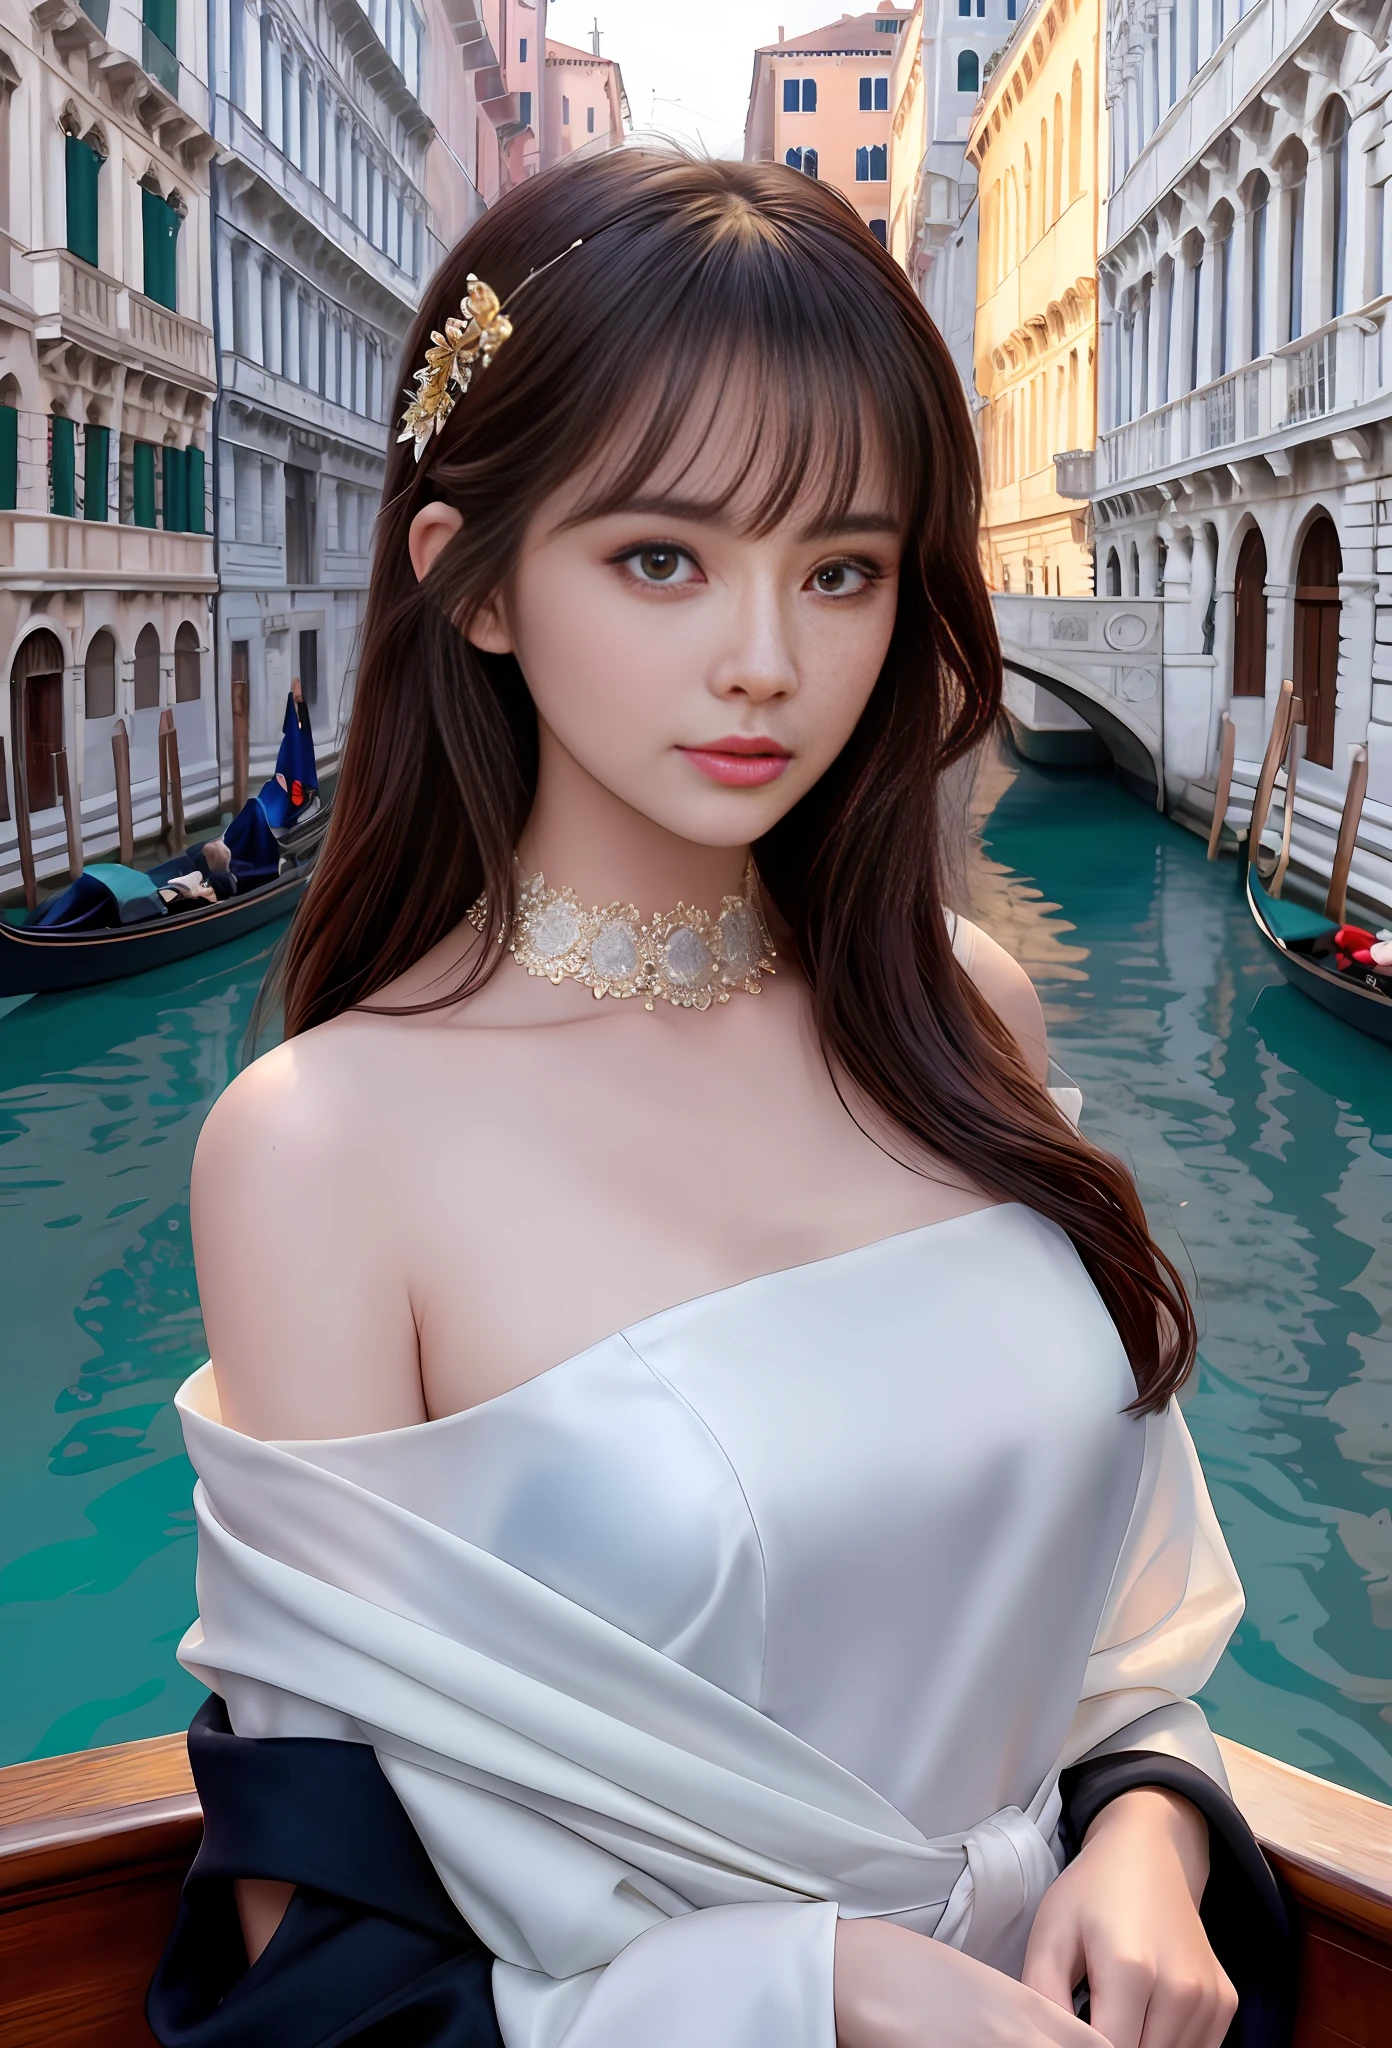 模特兒拍攝風格, (極為細緻的CG統一8k壁紙), 世界上最美丽的艺术品的全身照, 令人驚嘆的美麗照片現實可愛的女人, 一張超現實、超詳細的照片，照片中一個美麗的女孩作為 2020 年代威尼斯船上的女舞者,(嘆息橋背景),(公主眼,閃亮的瞳孔), 細緻對稱美麗的淡褐色眼睛, 细致华丽的脸庞,非常詳細, 充滿活力的,Ed Blinkey 的专业雄伟油画, 阿蒂·盖兰, 吉卜力工作室, 通過傑里米·曼, 格雷格·曼切斯, 安东尼奥·莫罗, ArtStation 上的熱門話題, cgsocial 的趨勢, 錯綜複雜, 高細節, 銳利的焦點, 戲劇性, midjourney 和 greg rutkowski 创作的逼真绘画艺术